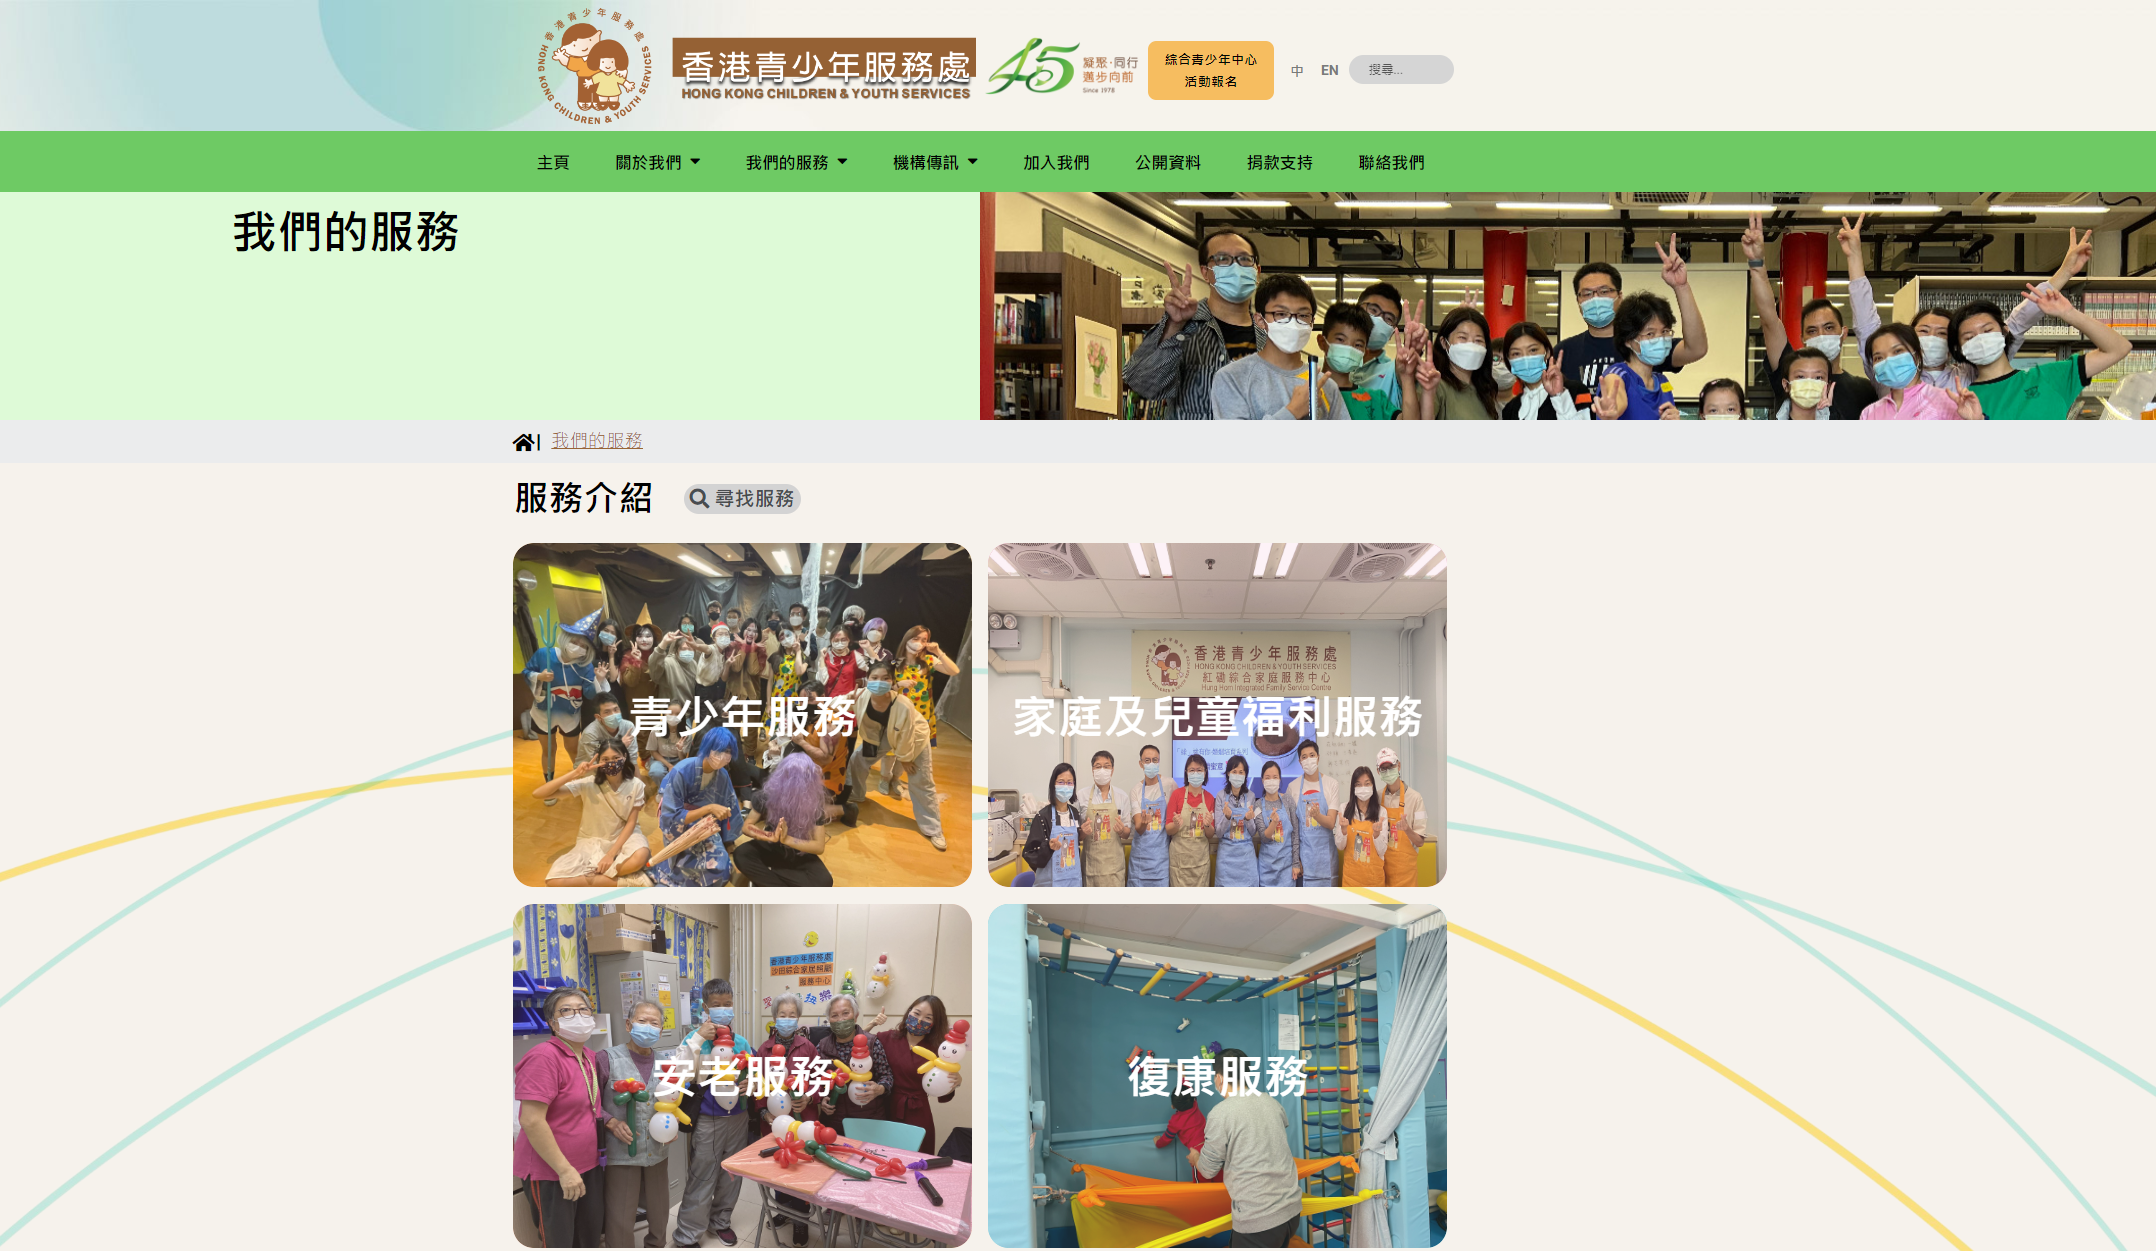 網站新面貌 - 香港青少年服務處之全新網站出世了!